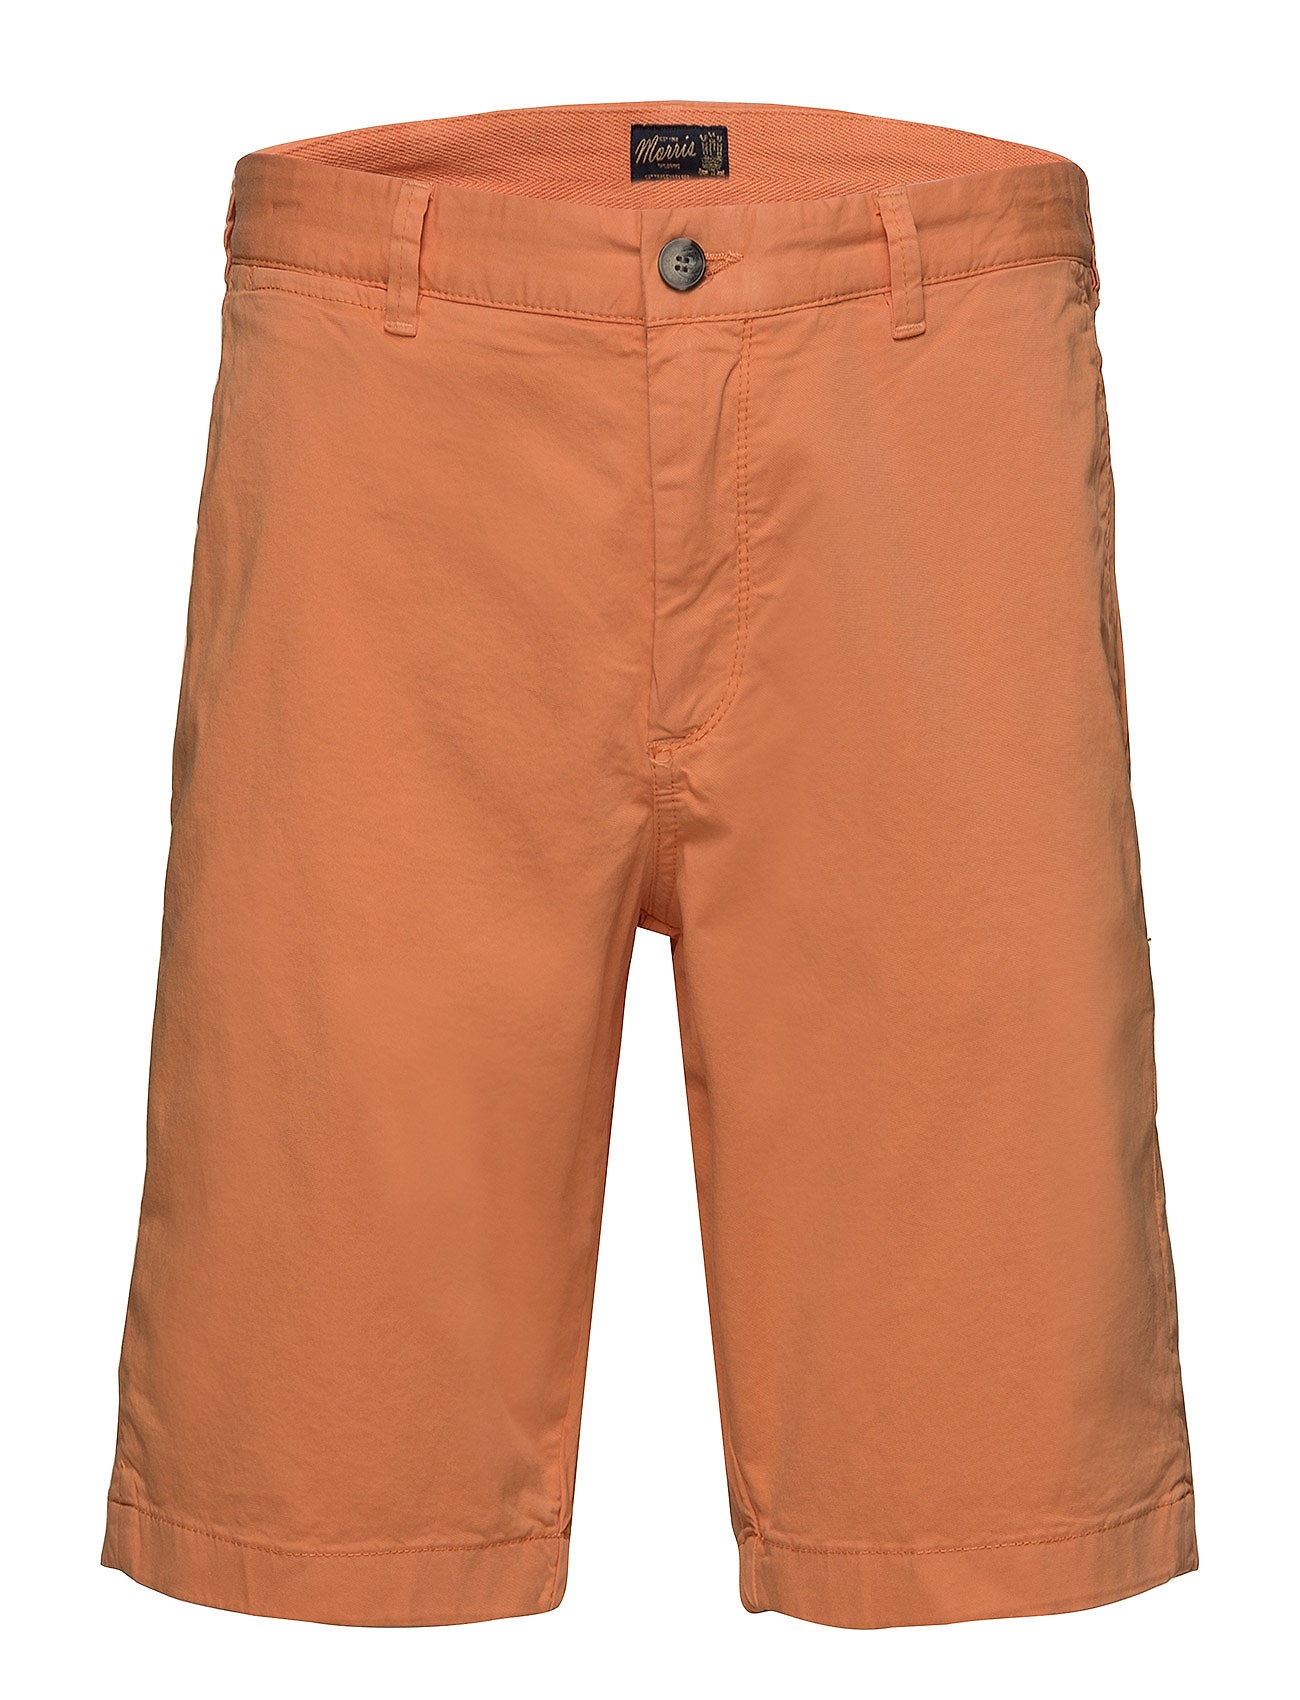 orange chino shorts